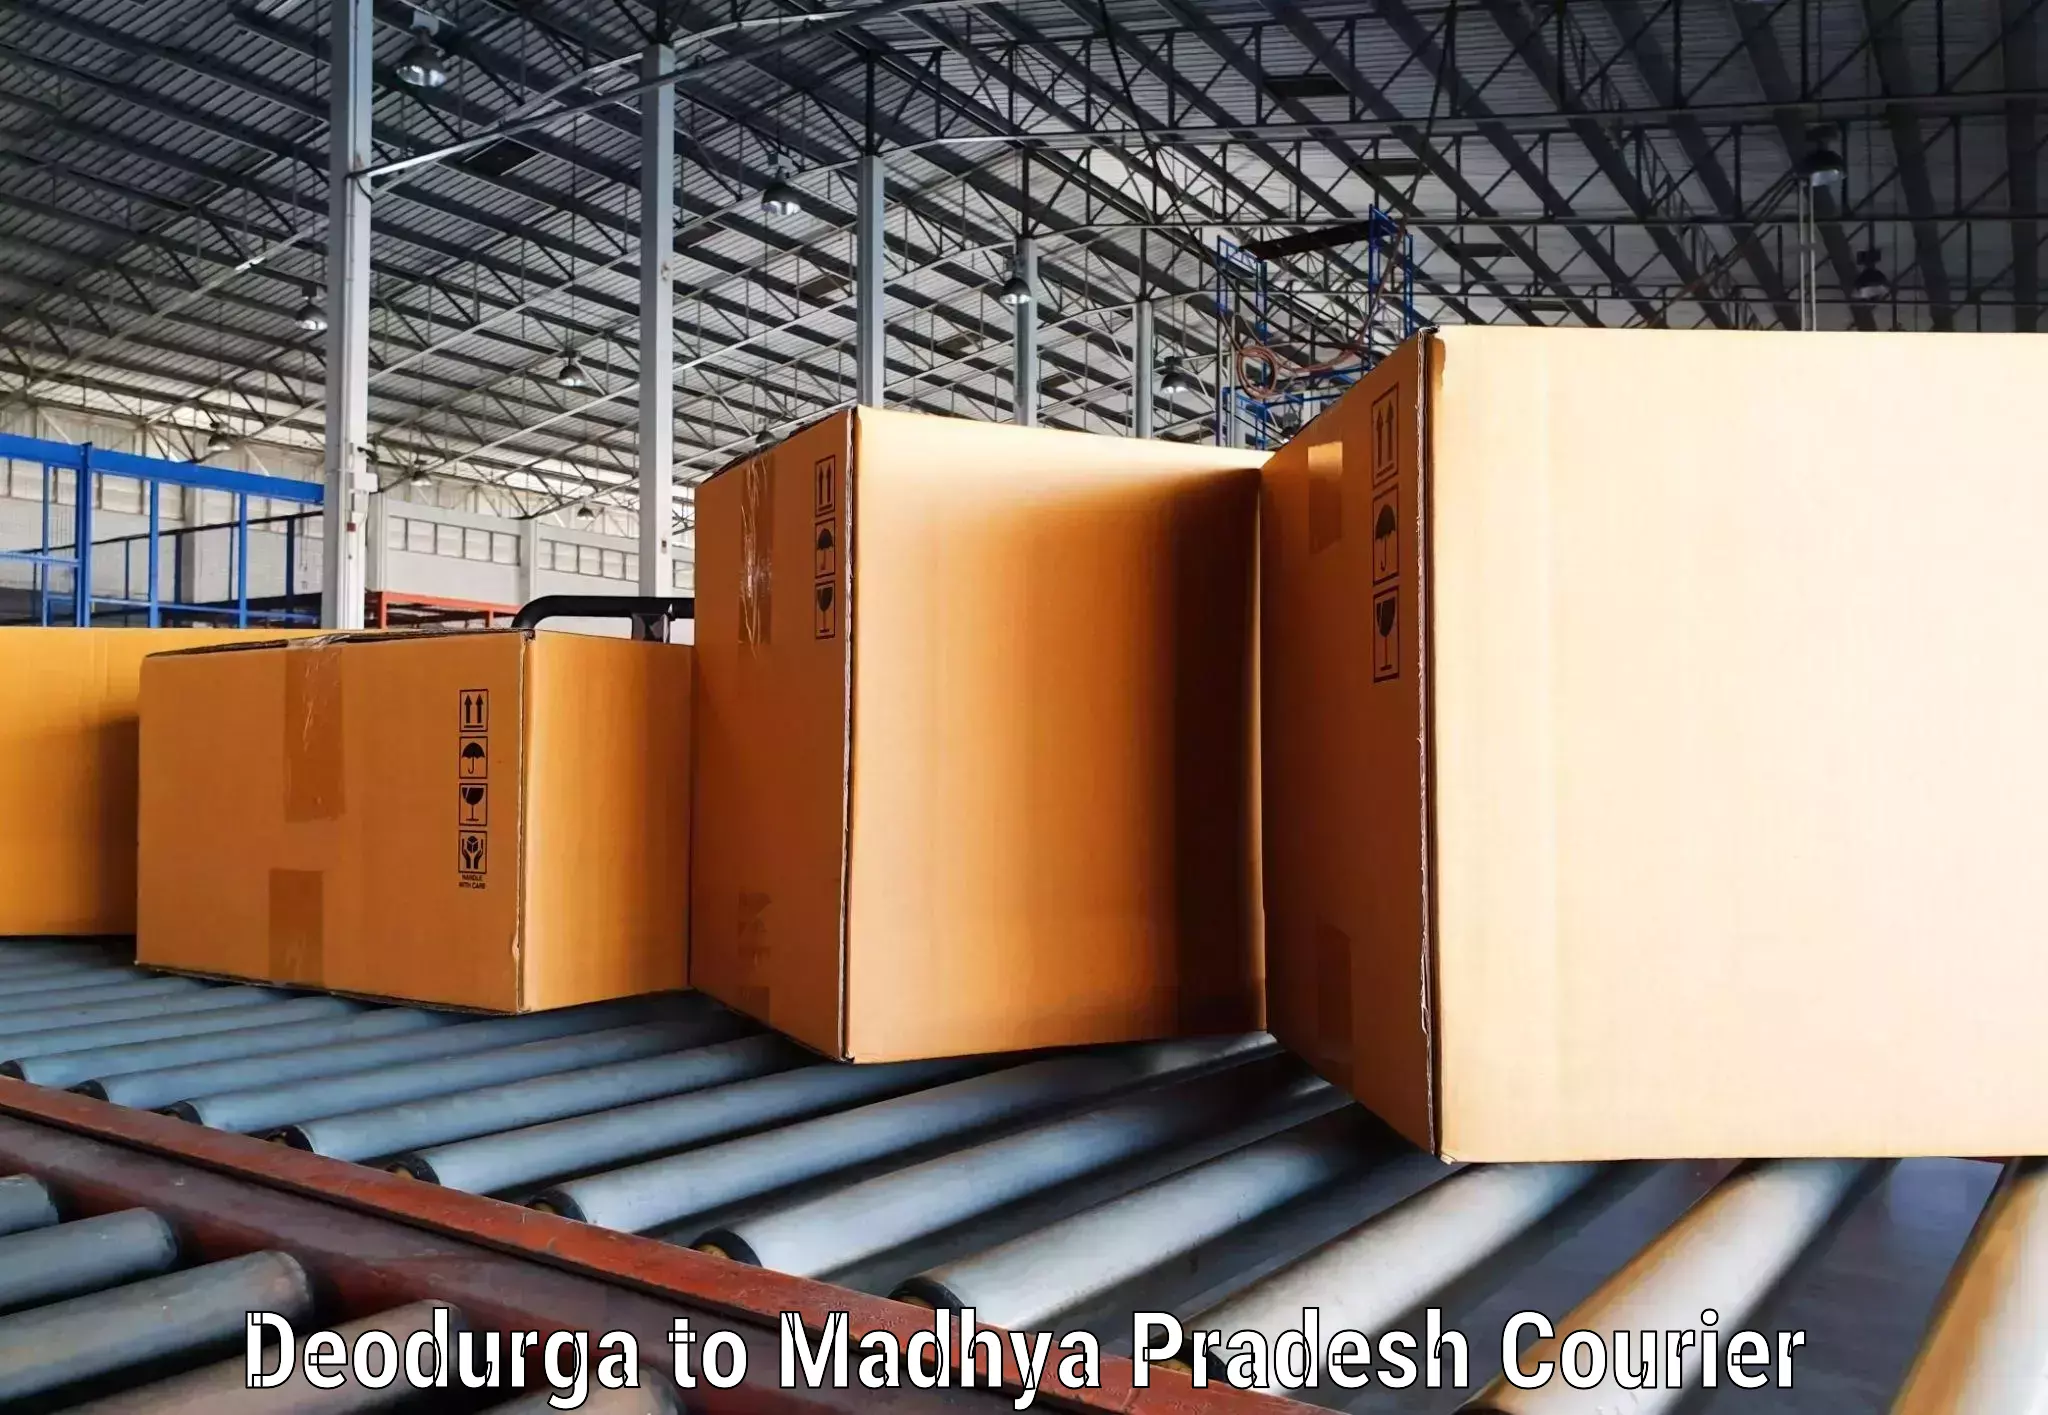 Modern courier technology Deodurga to Chand Chaurai